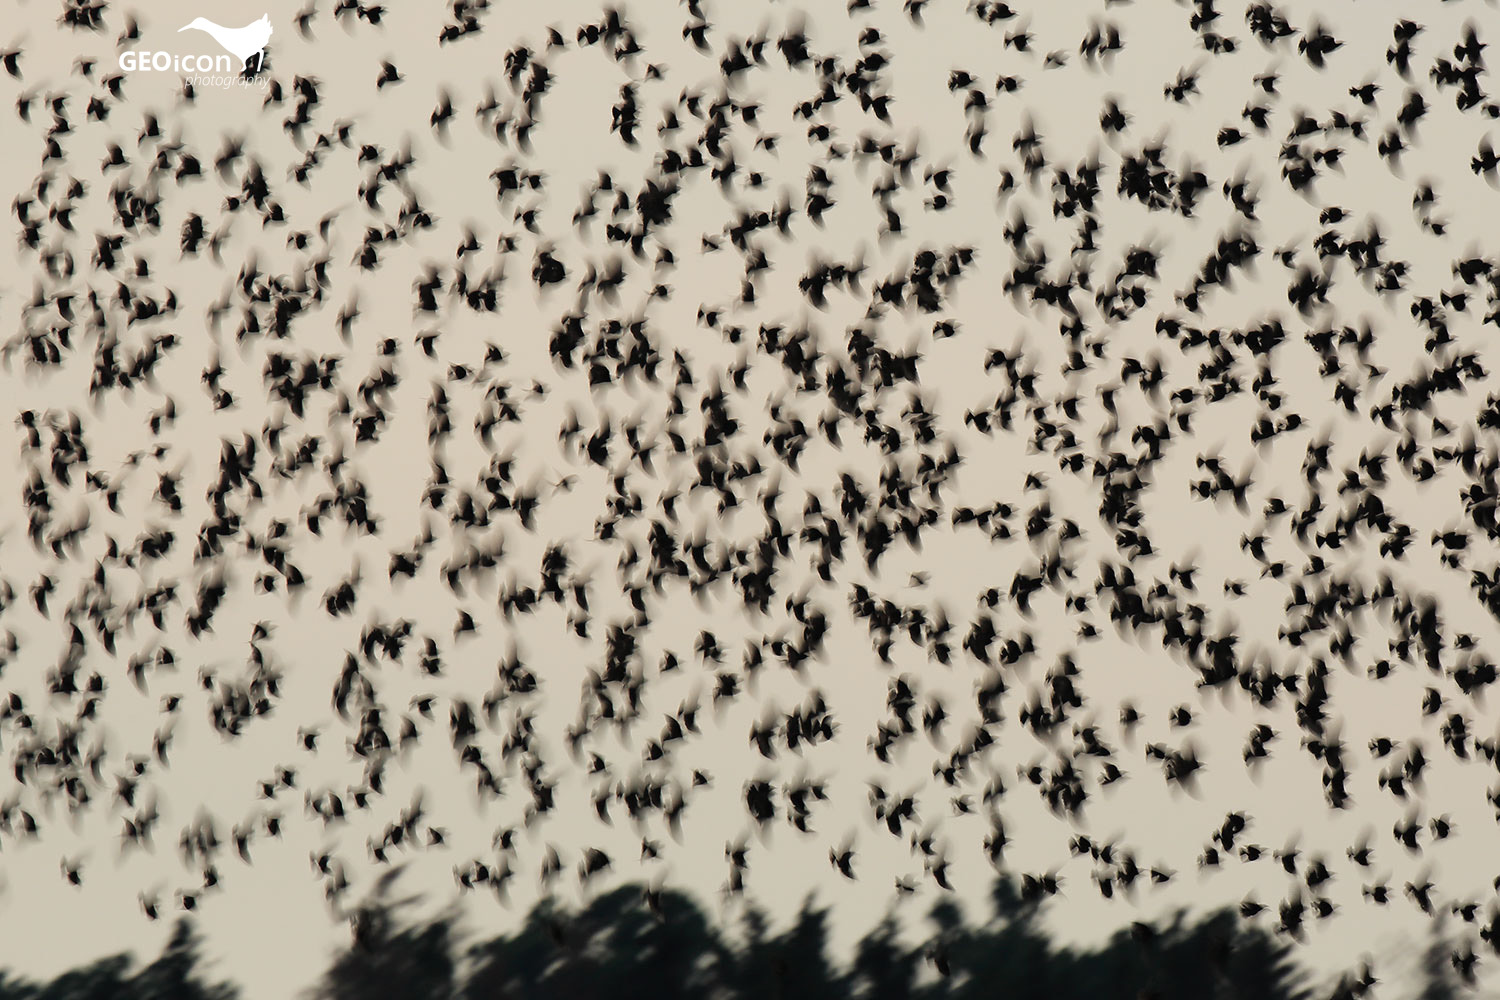 A flock of Starlings / hejno špačků obecných (Sturnus vulgaris)